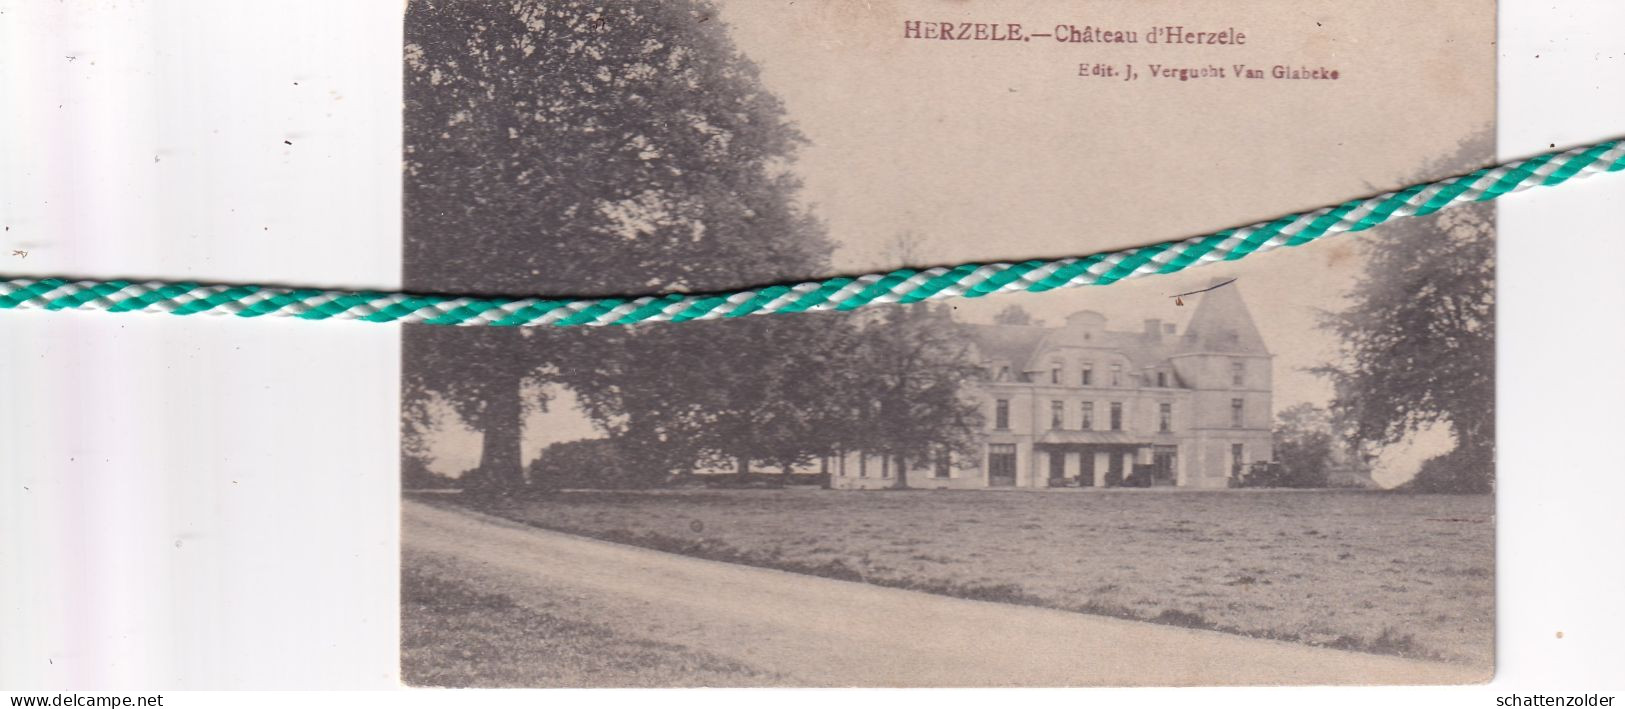 Herzele, Chateau D'Herzele, Edit Vergucht-Van Glabeke - Herzele